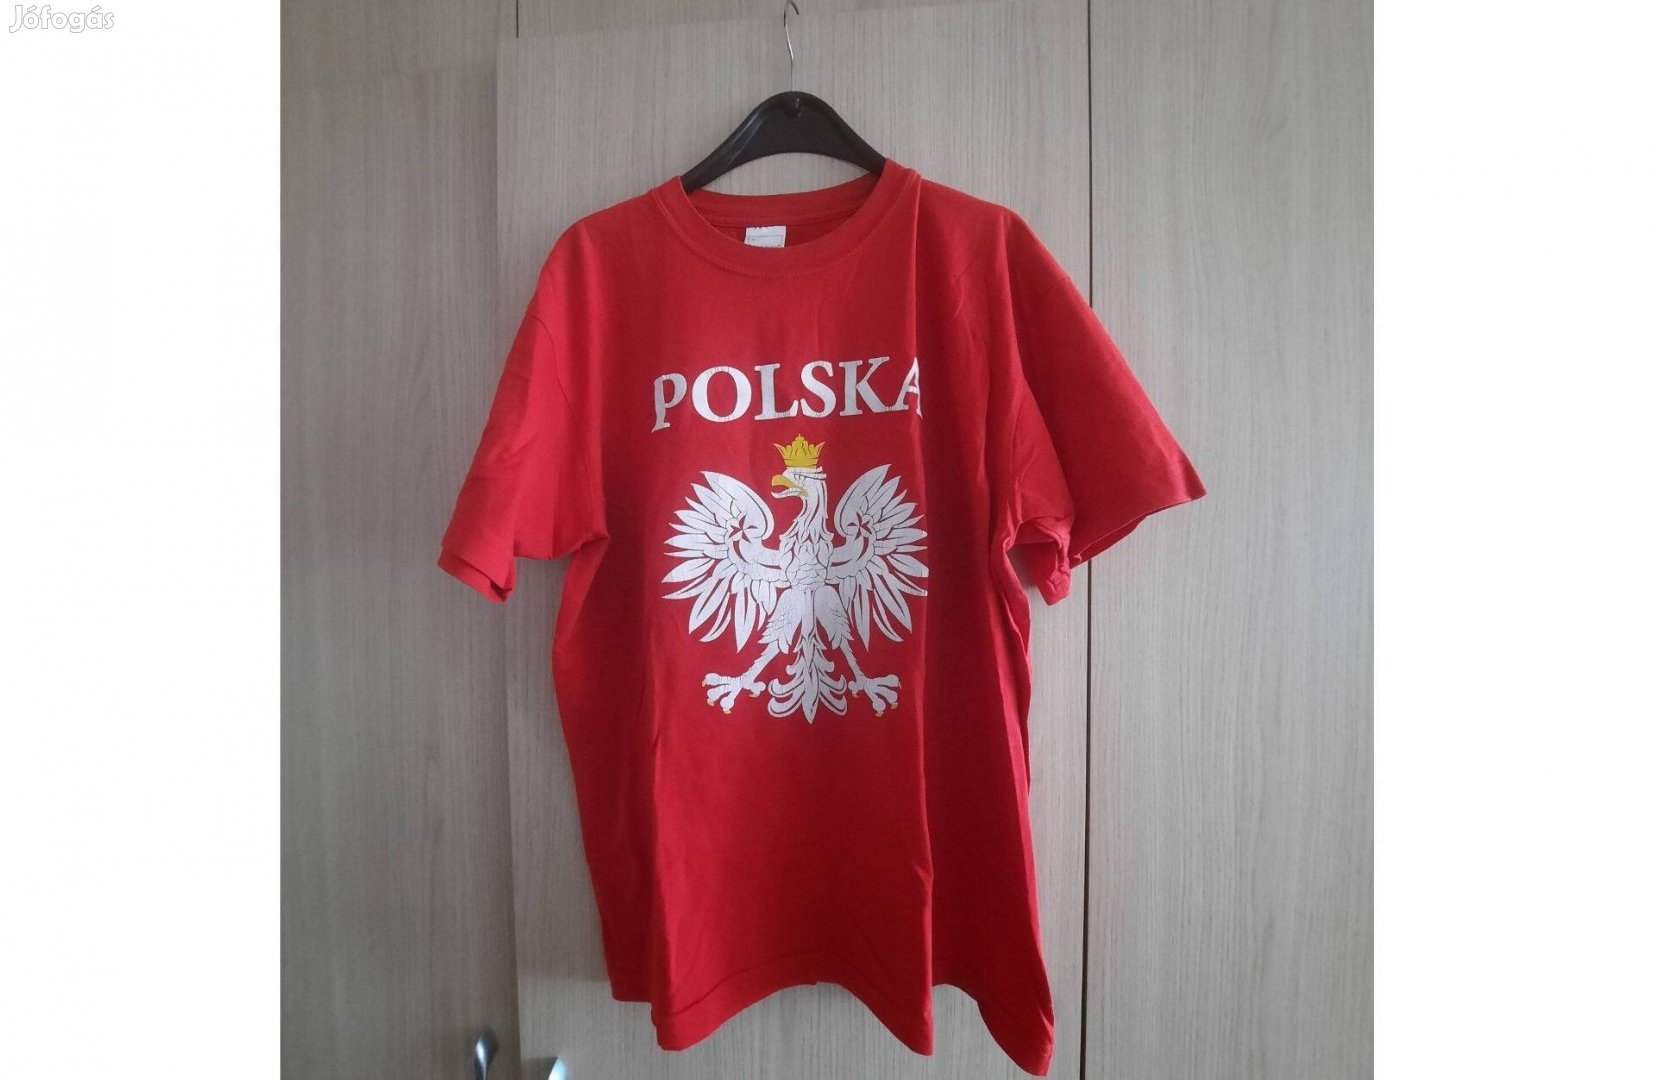 Női sötét piros póló M-es méret Polska felirattal eladó